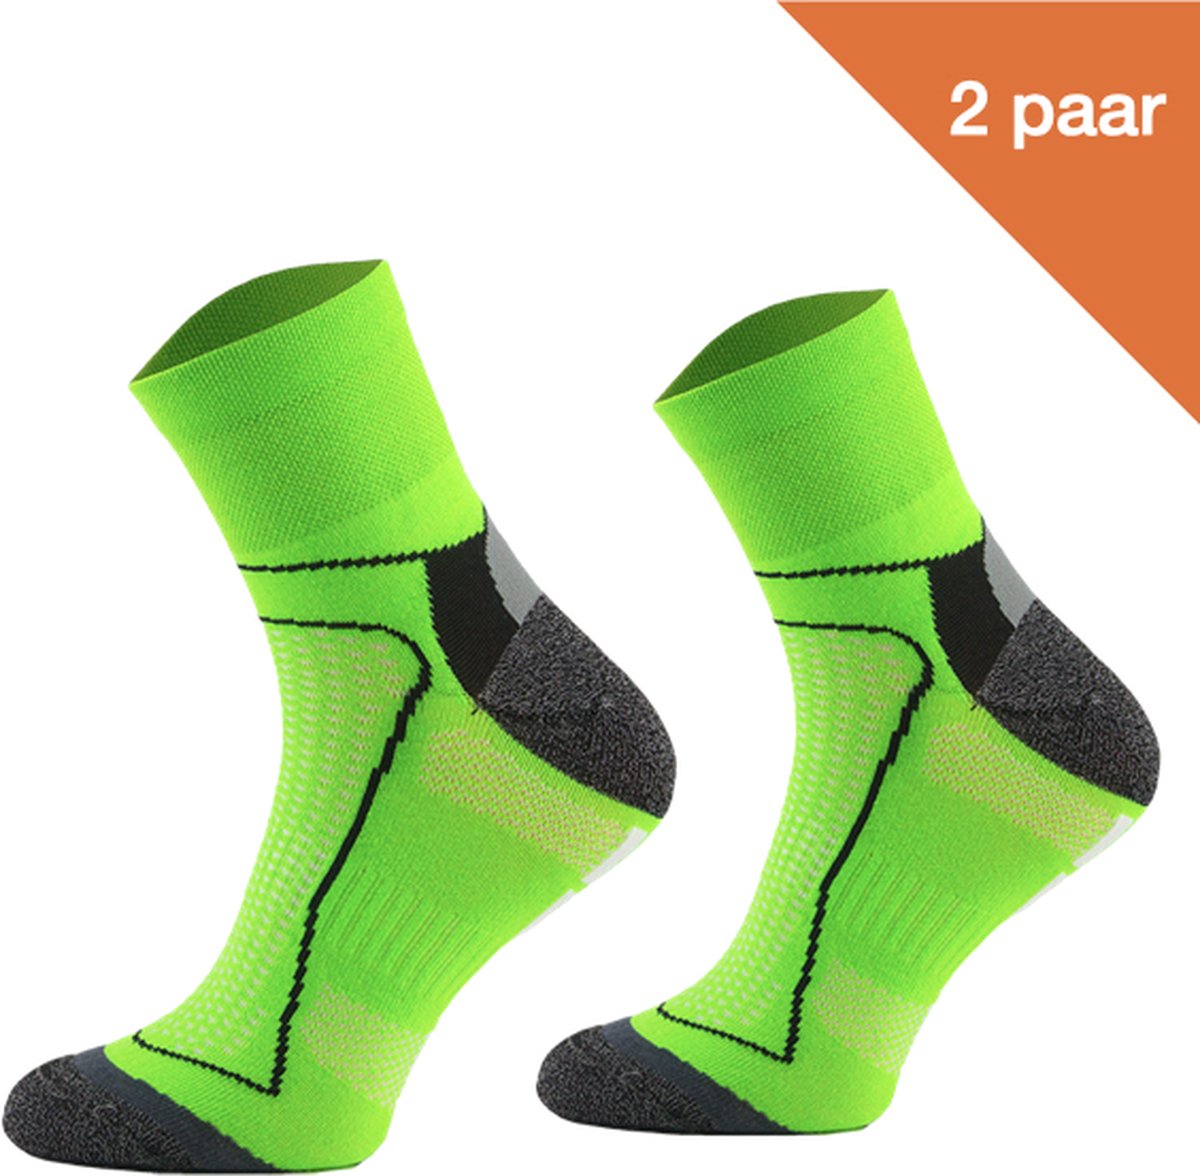 Comodo Fietssokken Polyester BIK1 - Neon groen - 2 paar - Maat 39-42